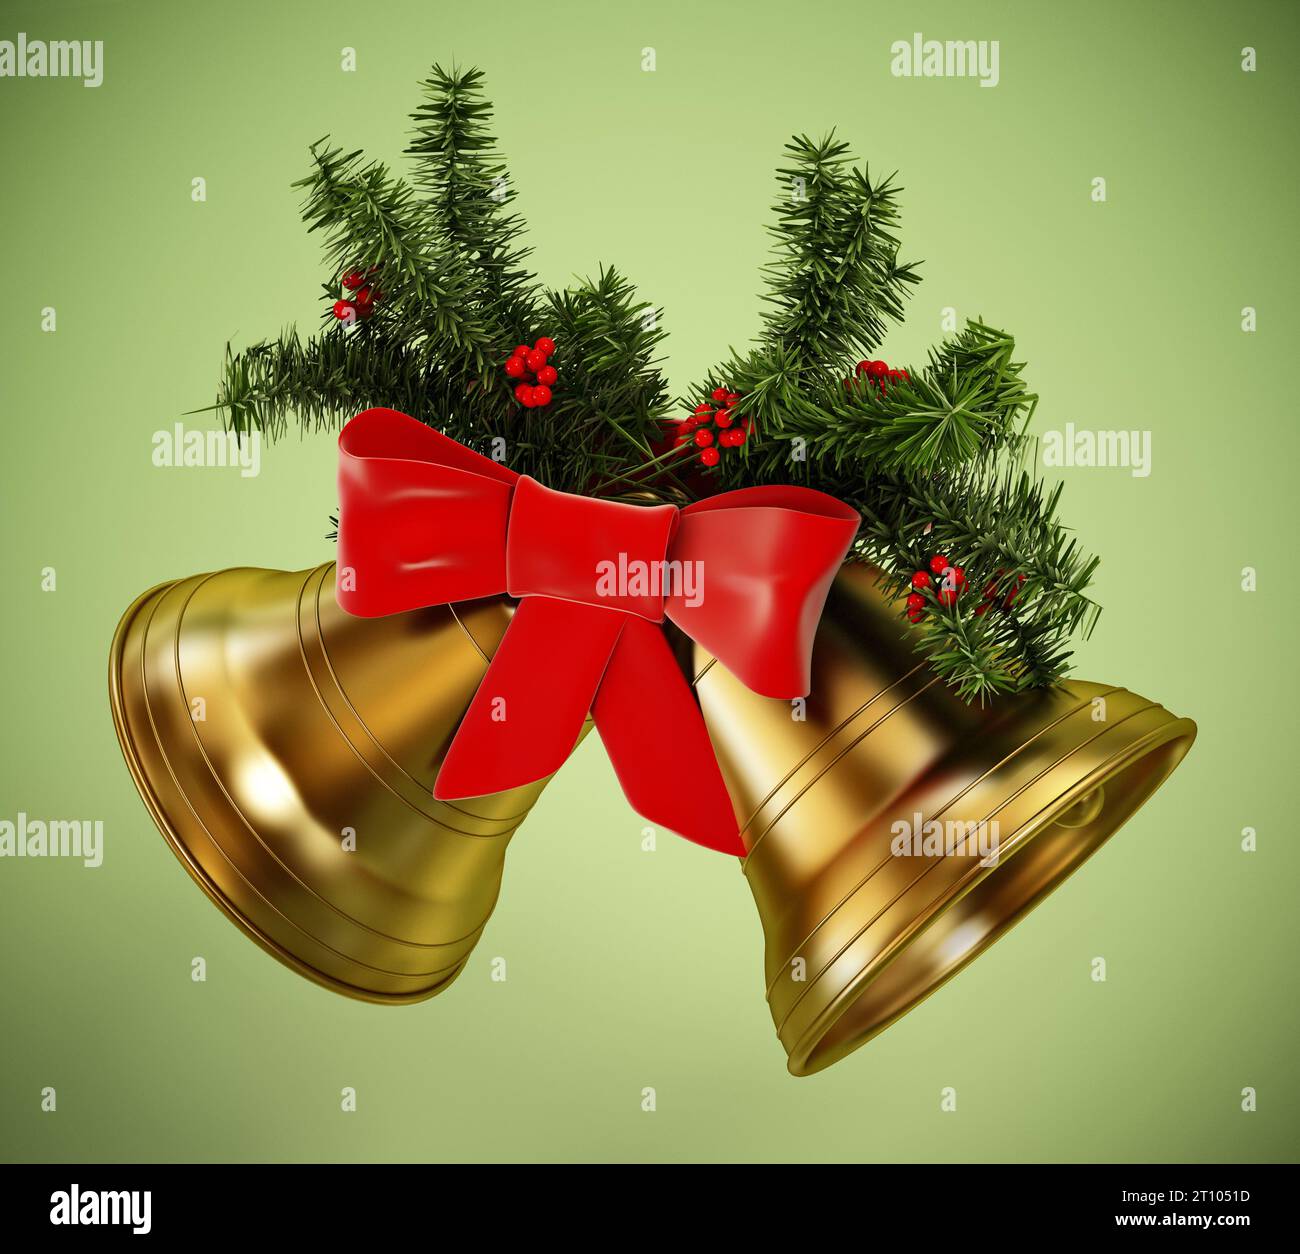 Goldene Weihnachtsglocken, rotes Band und Tannenzweige isoliert auf grünem Hintergrund. 3D-Abbildung. Stockfoto